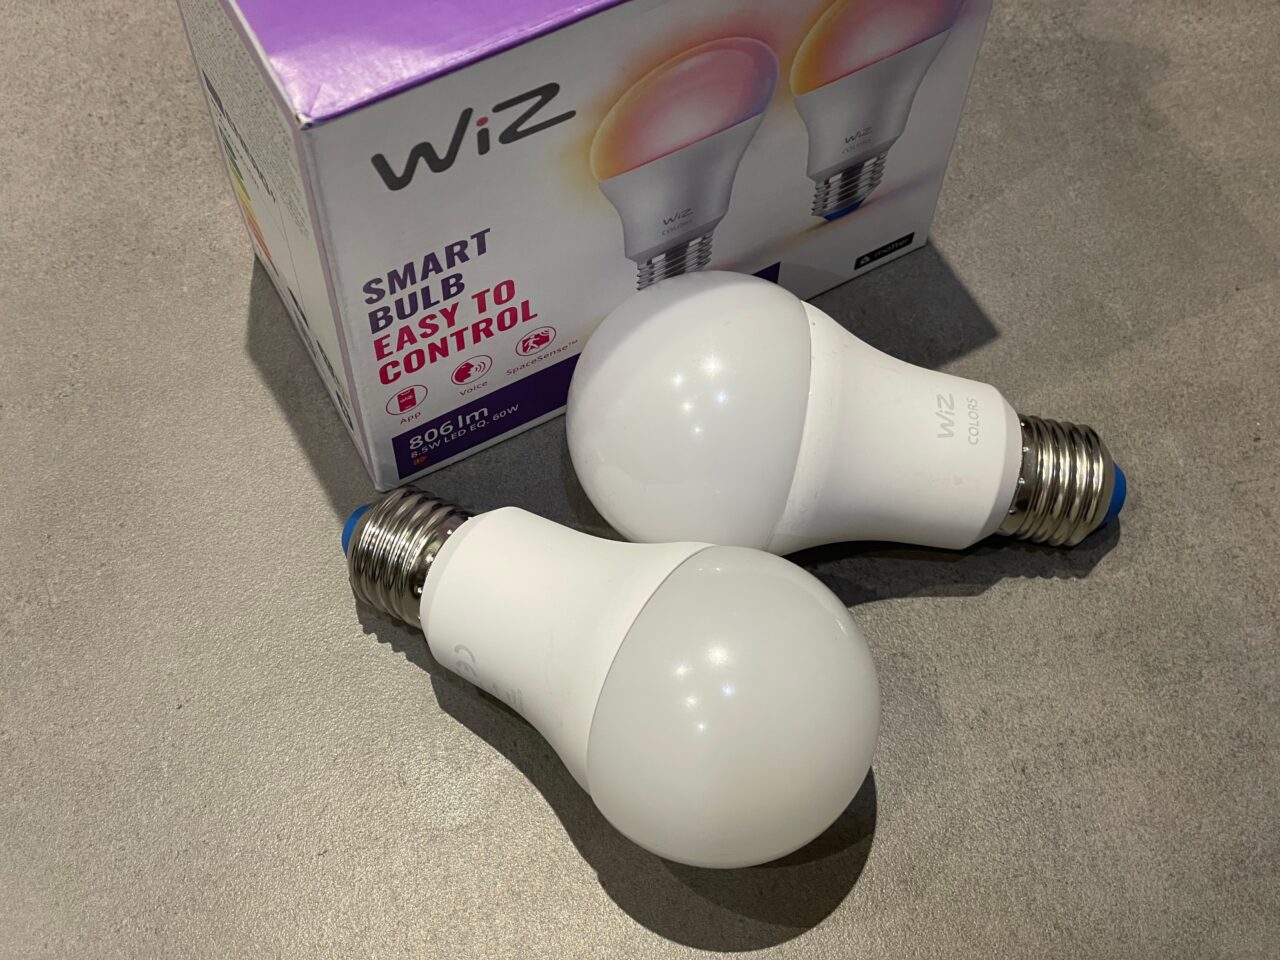 Dwie inteligentne żarówki LED marki WiZ leżące na blacie obok opakowania produktu.